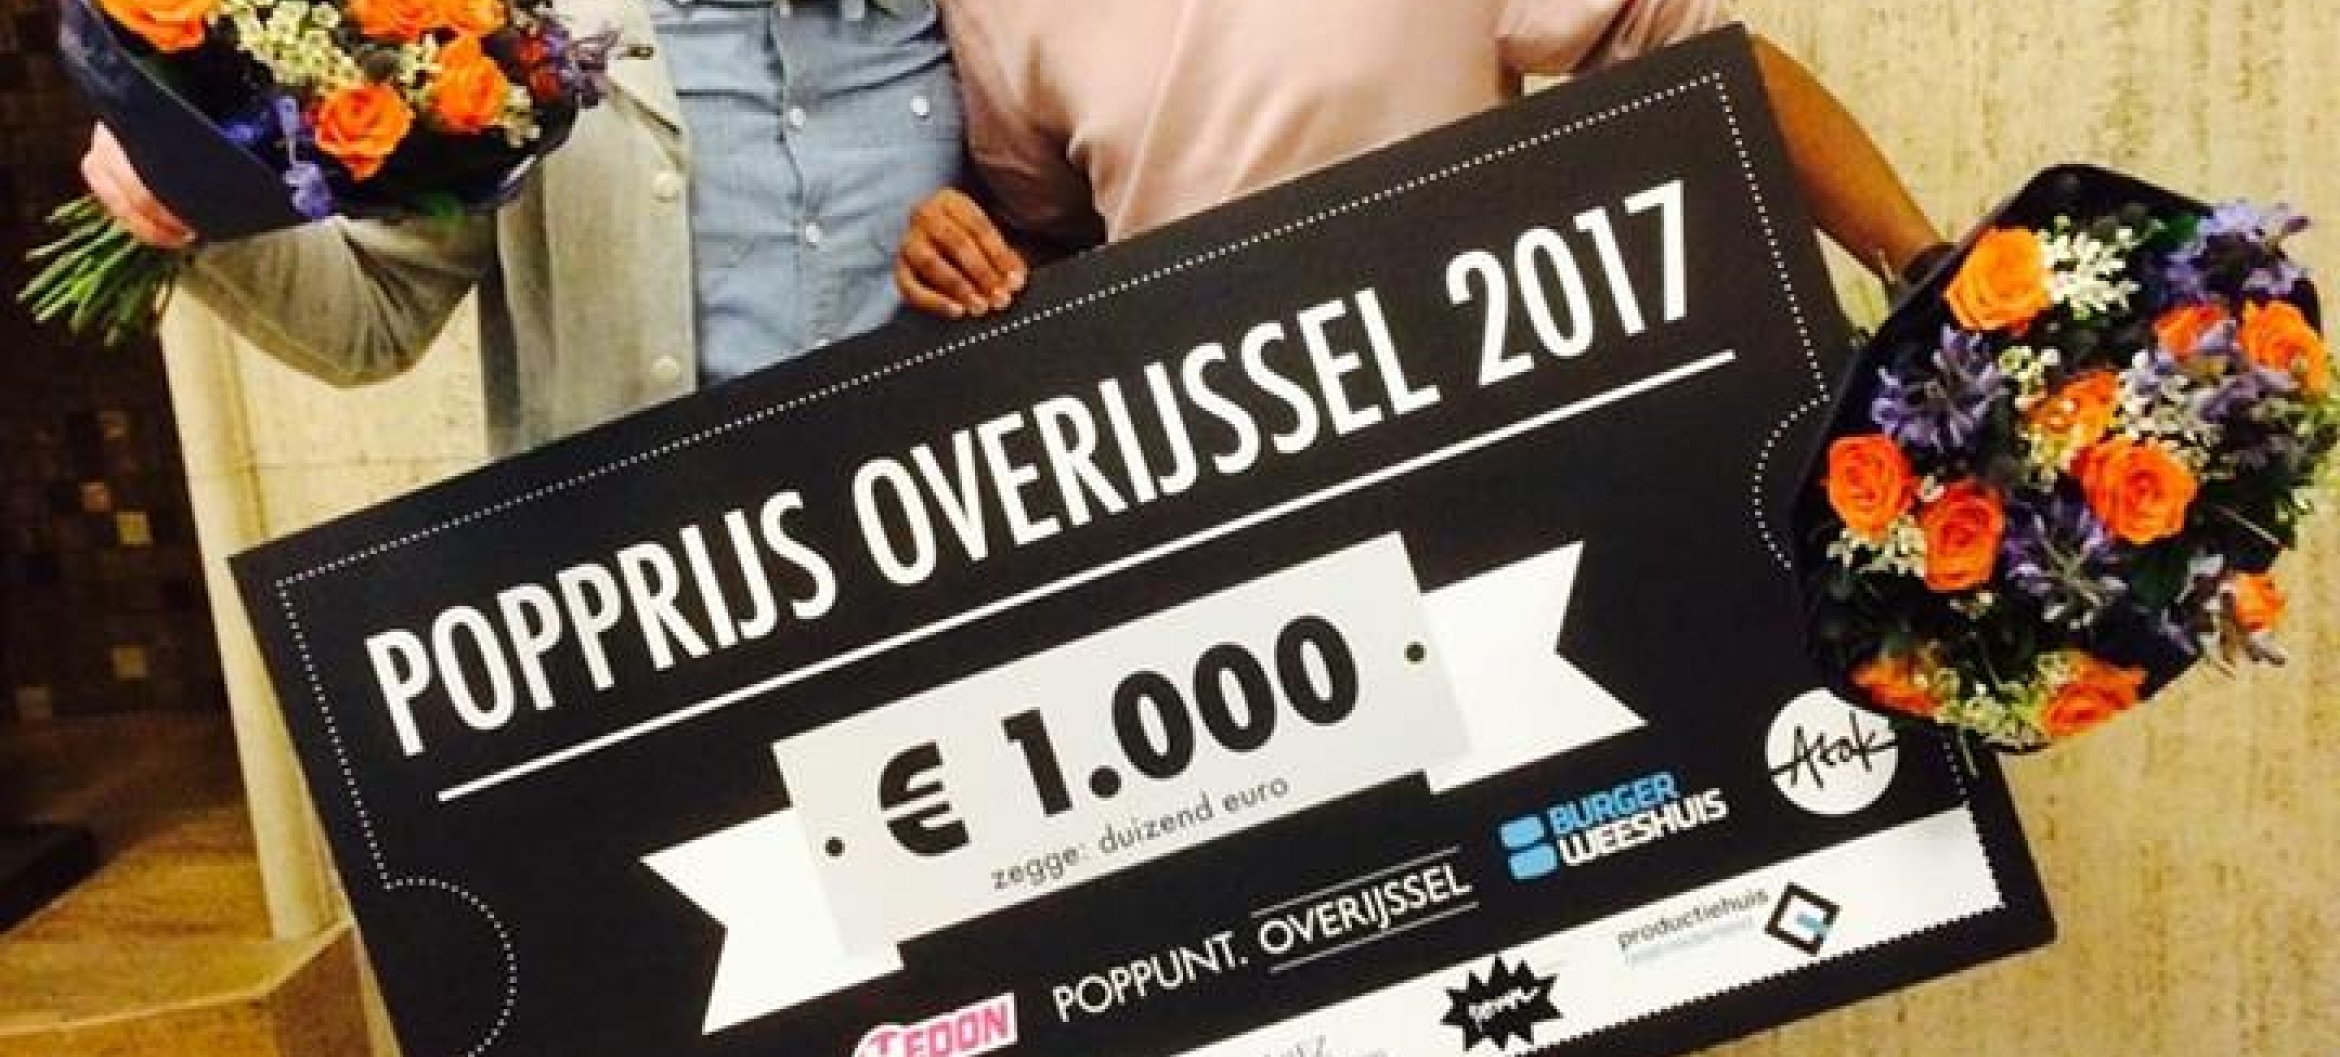 Jeangu Macrooy wint Popprijs Overijssel 2017!!